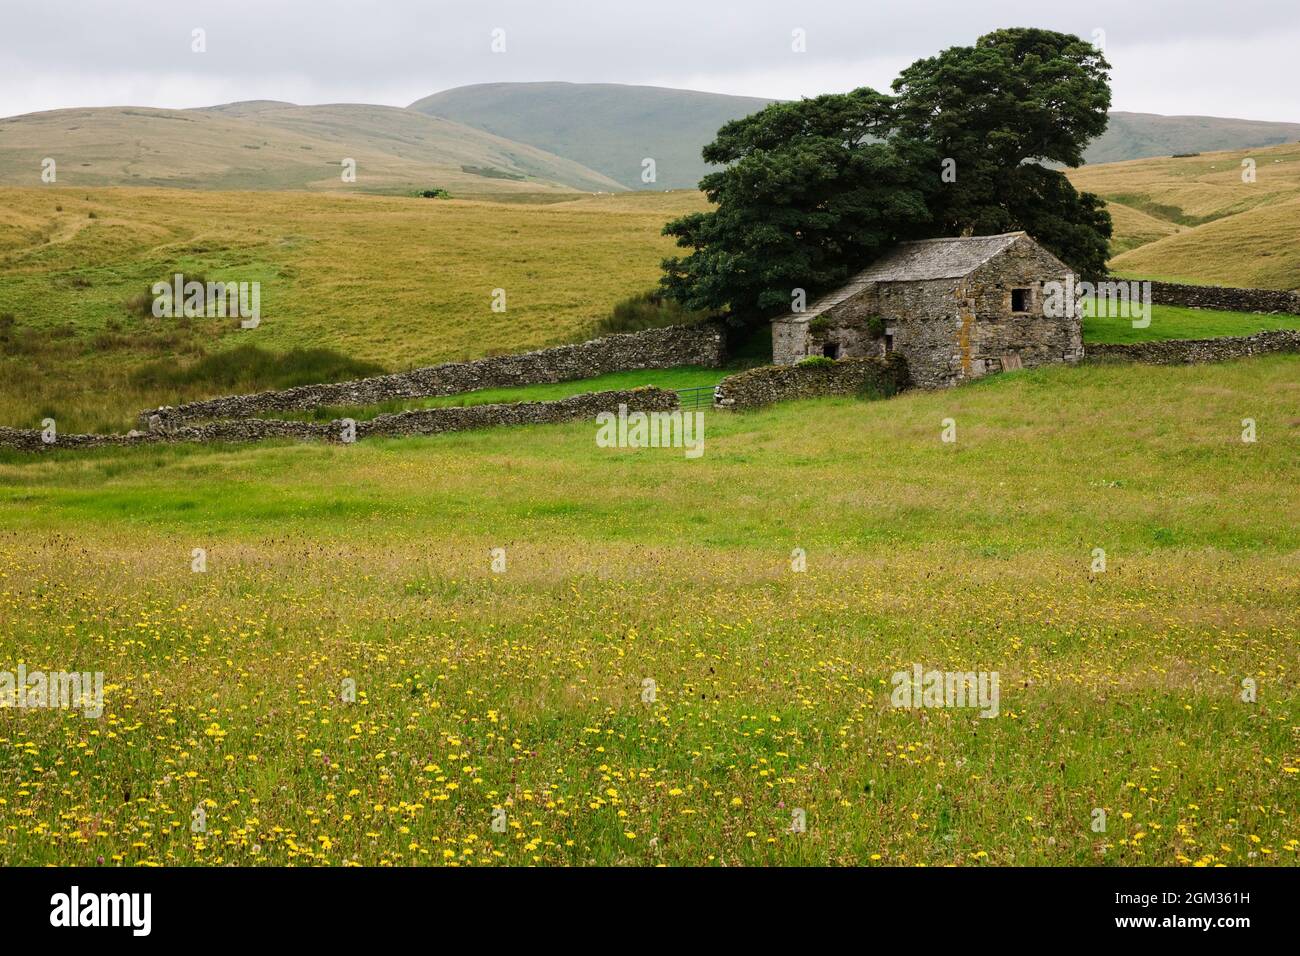 Prado de heno, granja Kilnmire, Ravenstonedale, Cumbria, Reino Unido Foto de stock